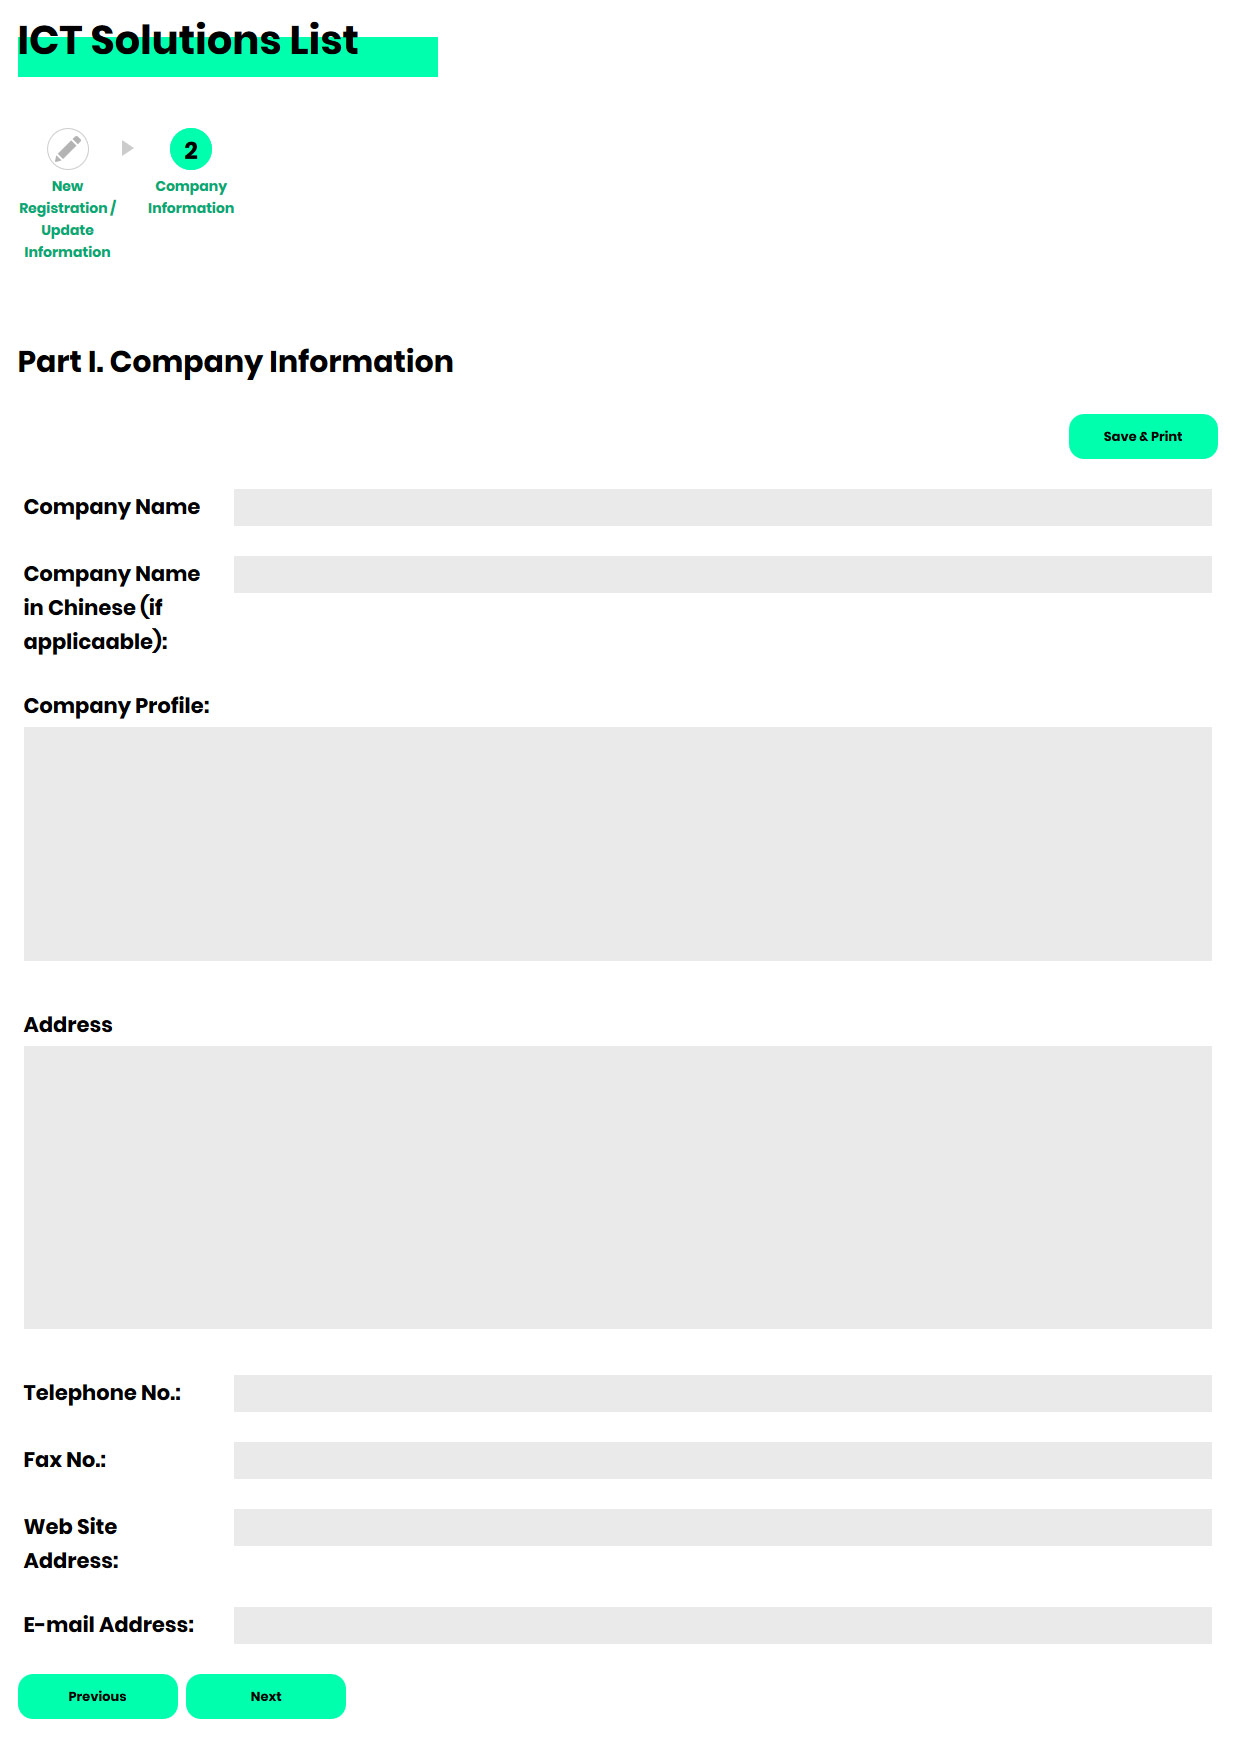 Part I. Company Information